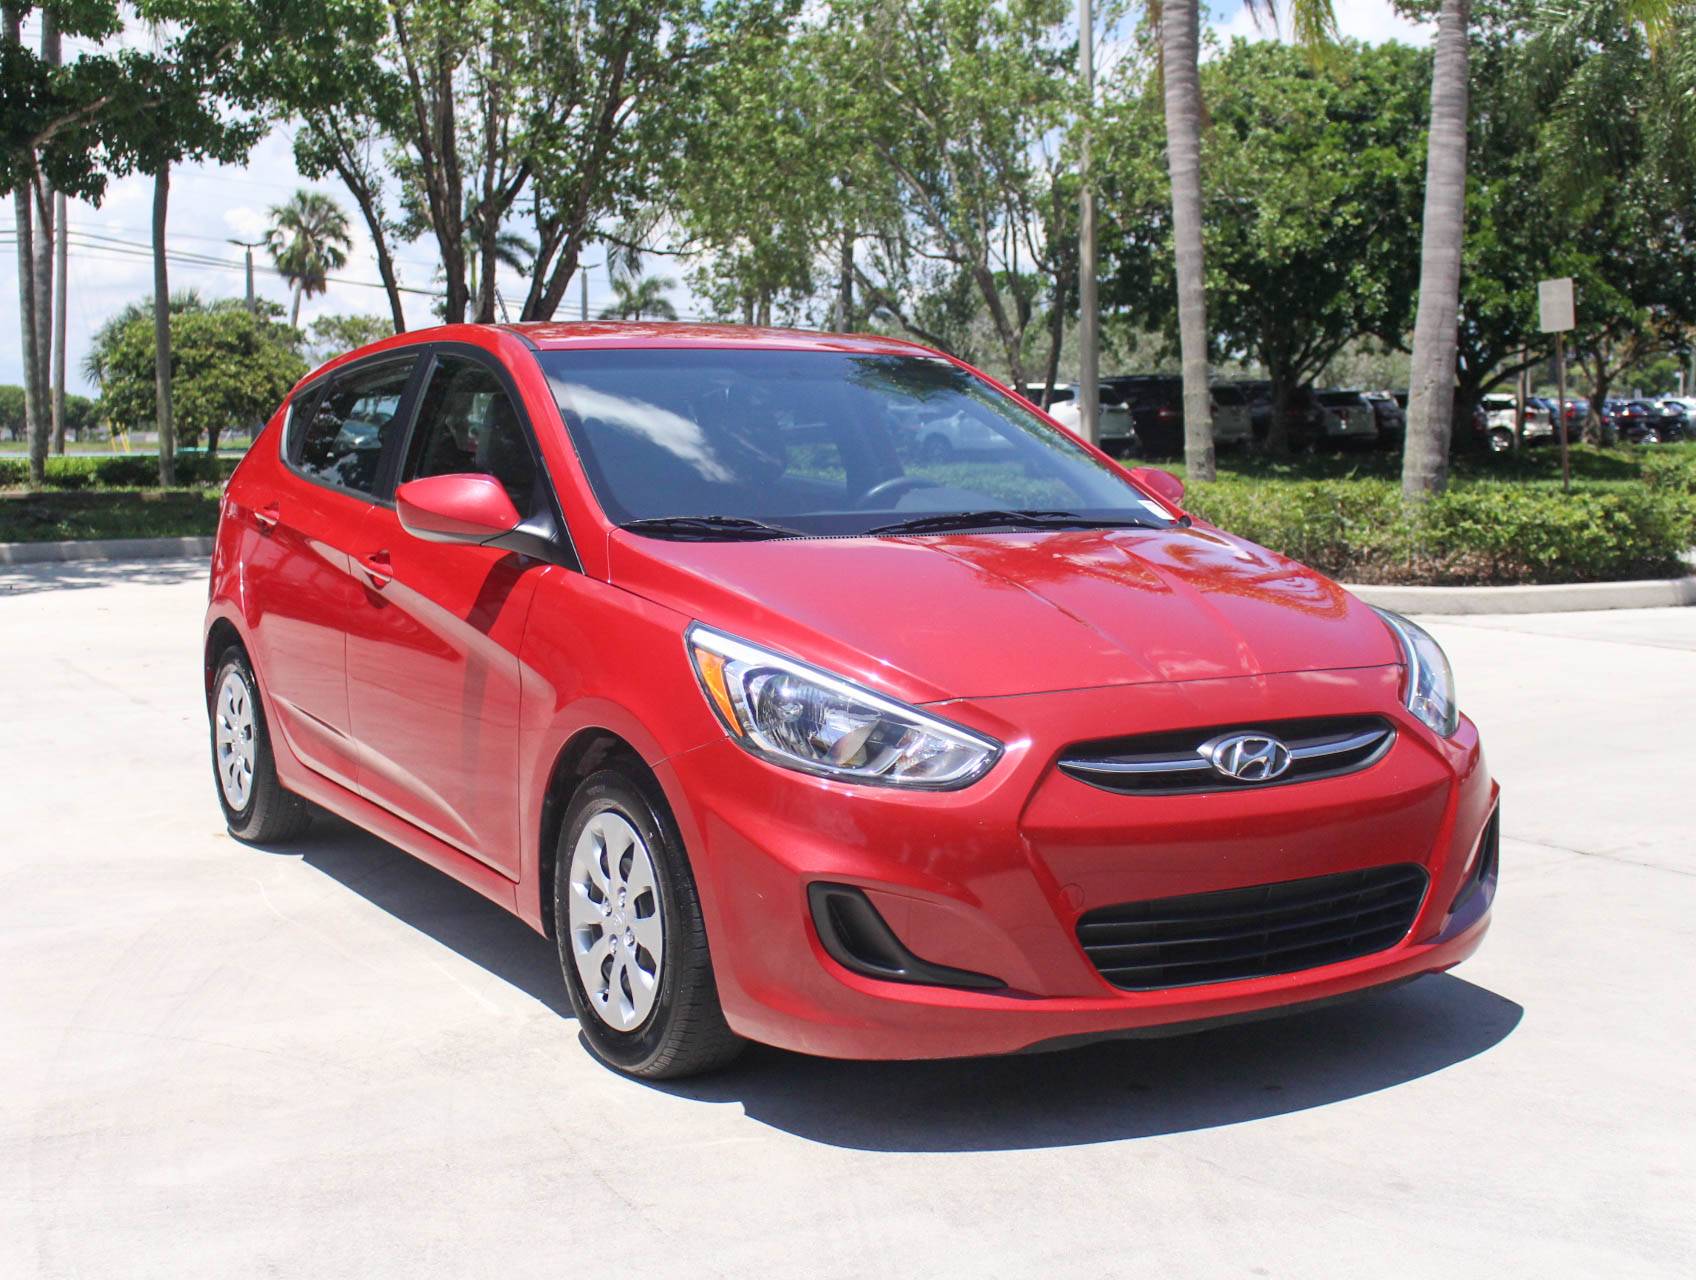 Florida Fine Cars - Used HYUNDAI ACCENT 2016 MARGATE SE